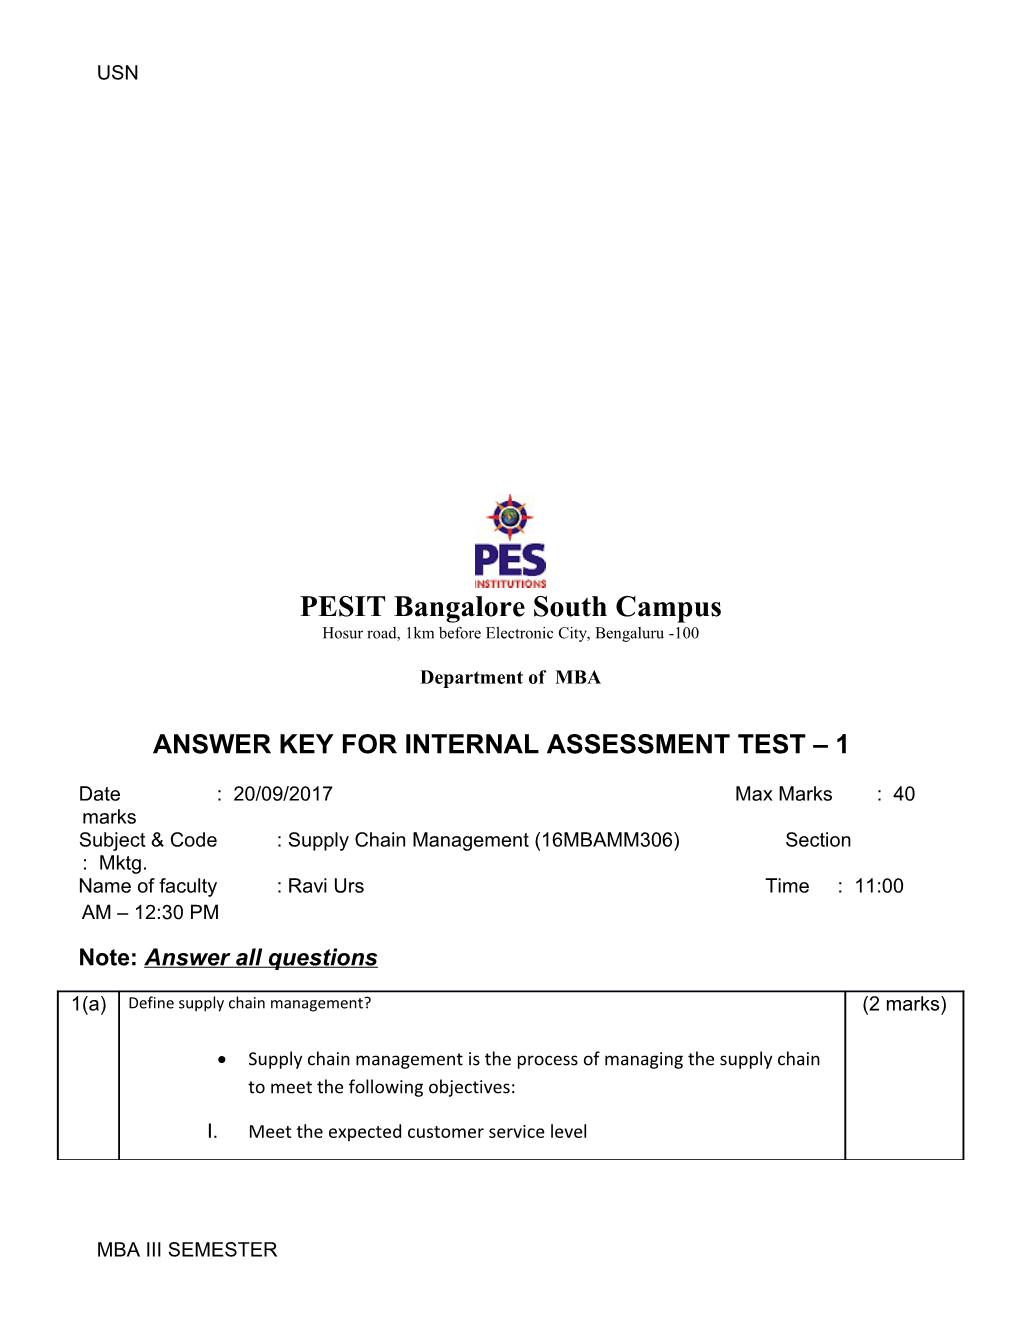 Answer Key for Internal Assessment Test 1